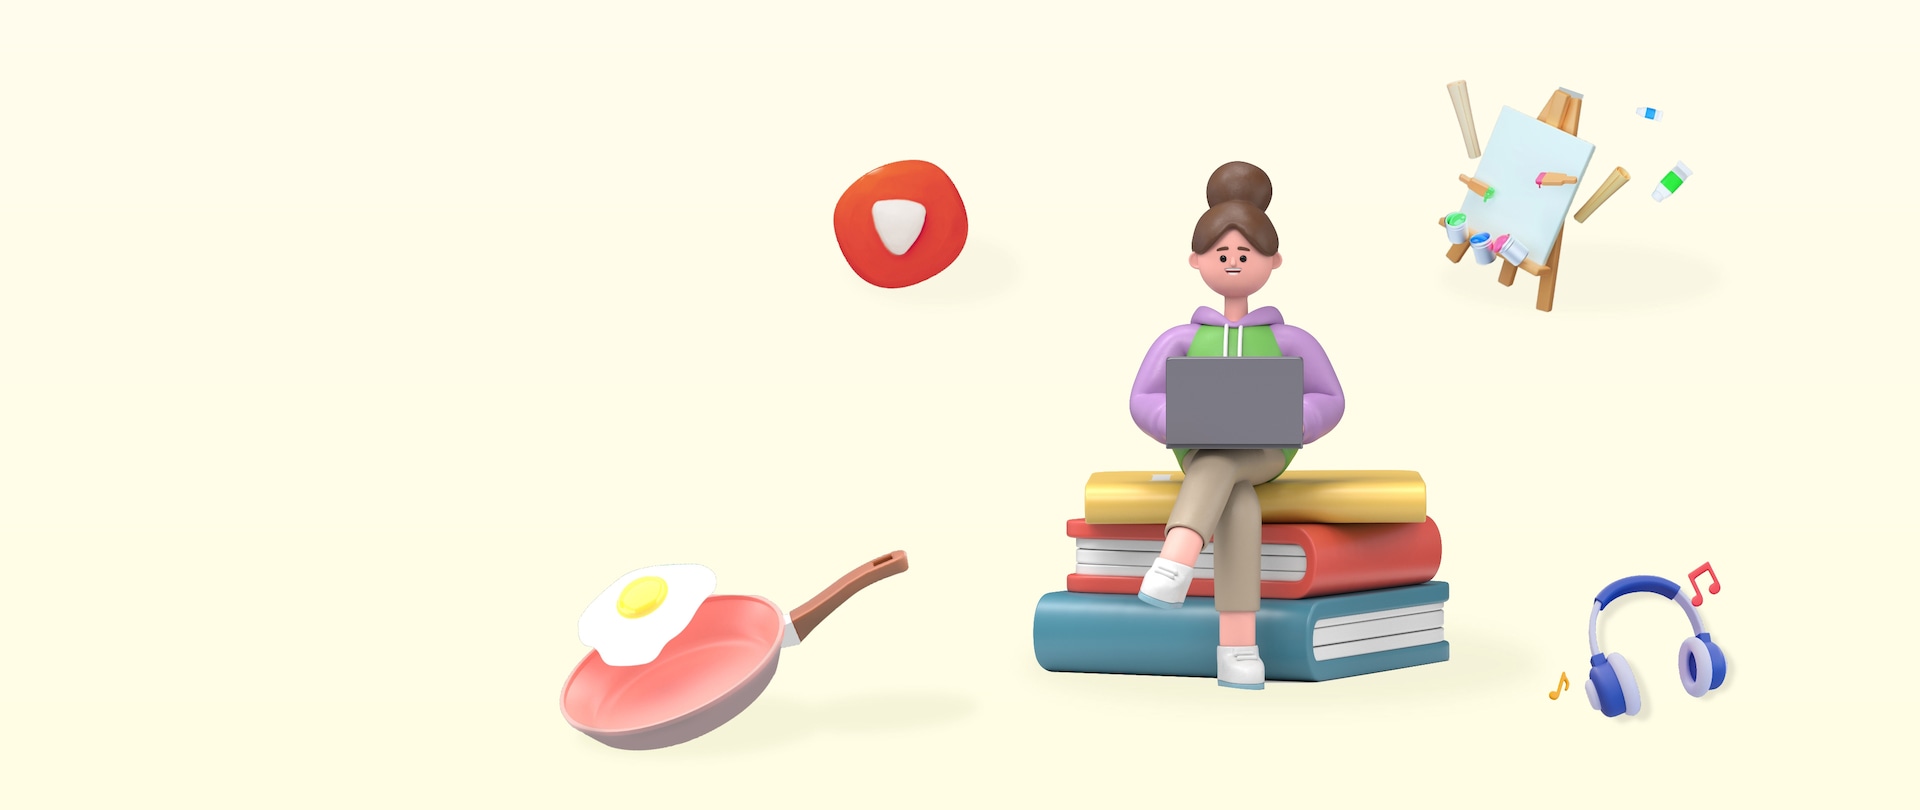 계란후라이가 올려져있는 후라이팬, 책 위에 앉아서 노트북하는 여자, 유튜브 아이콘, 물감, 도화지, 음표, 헤드셋